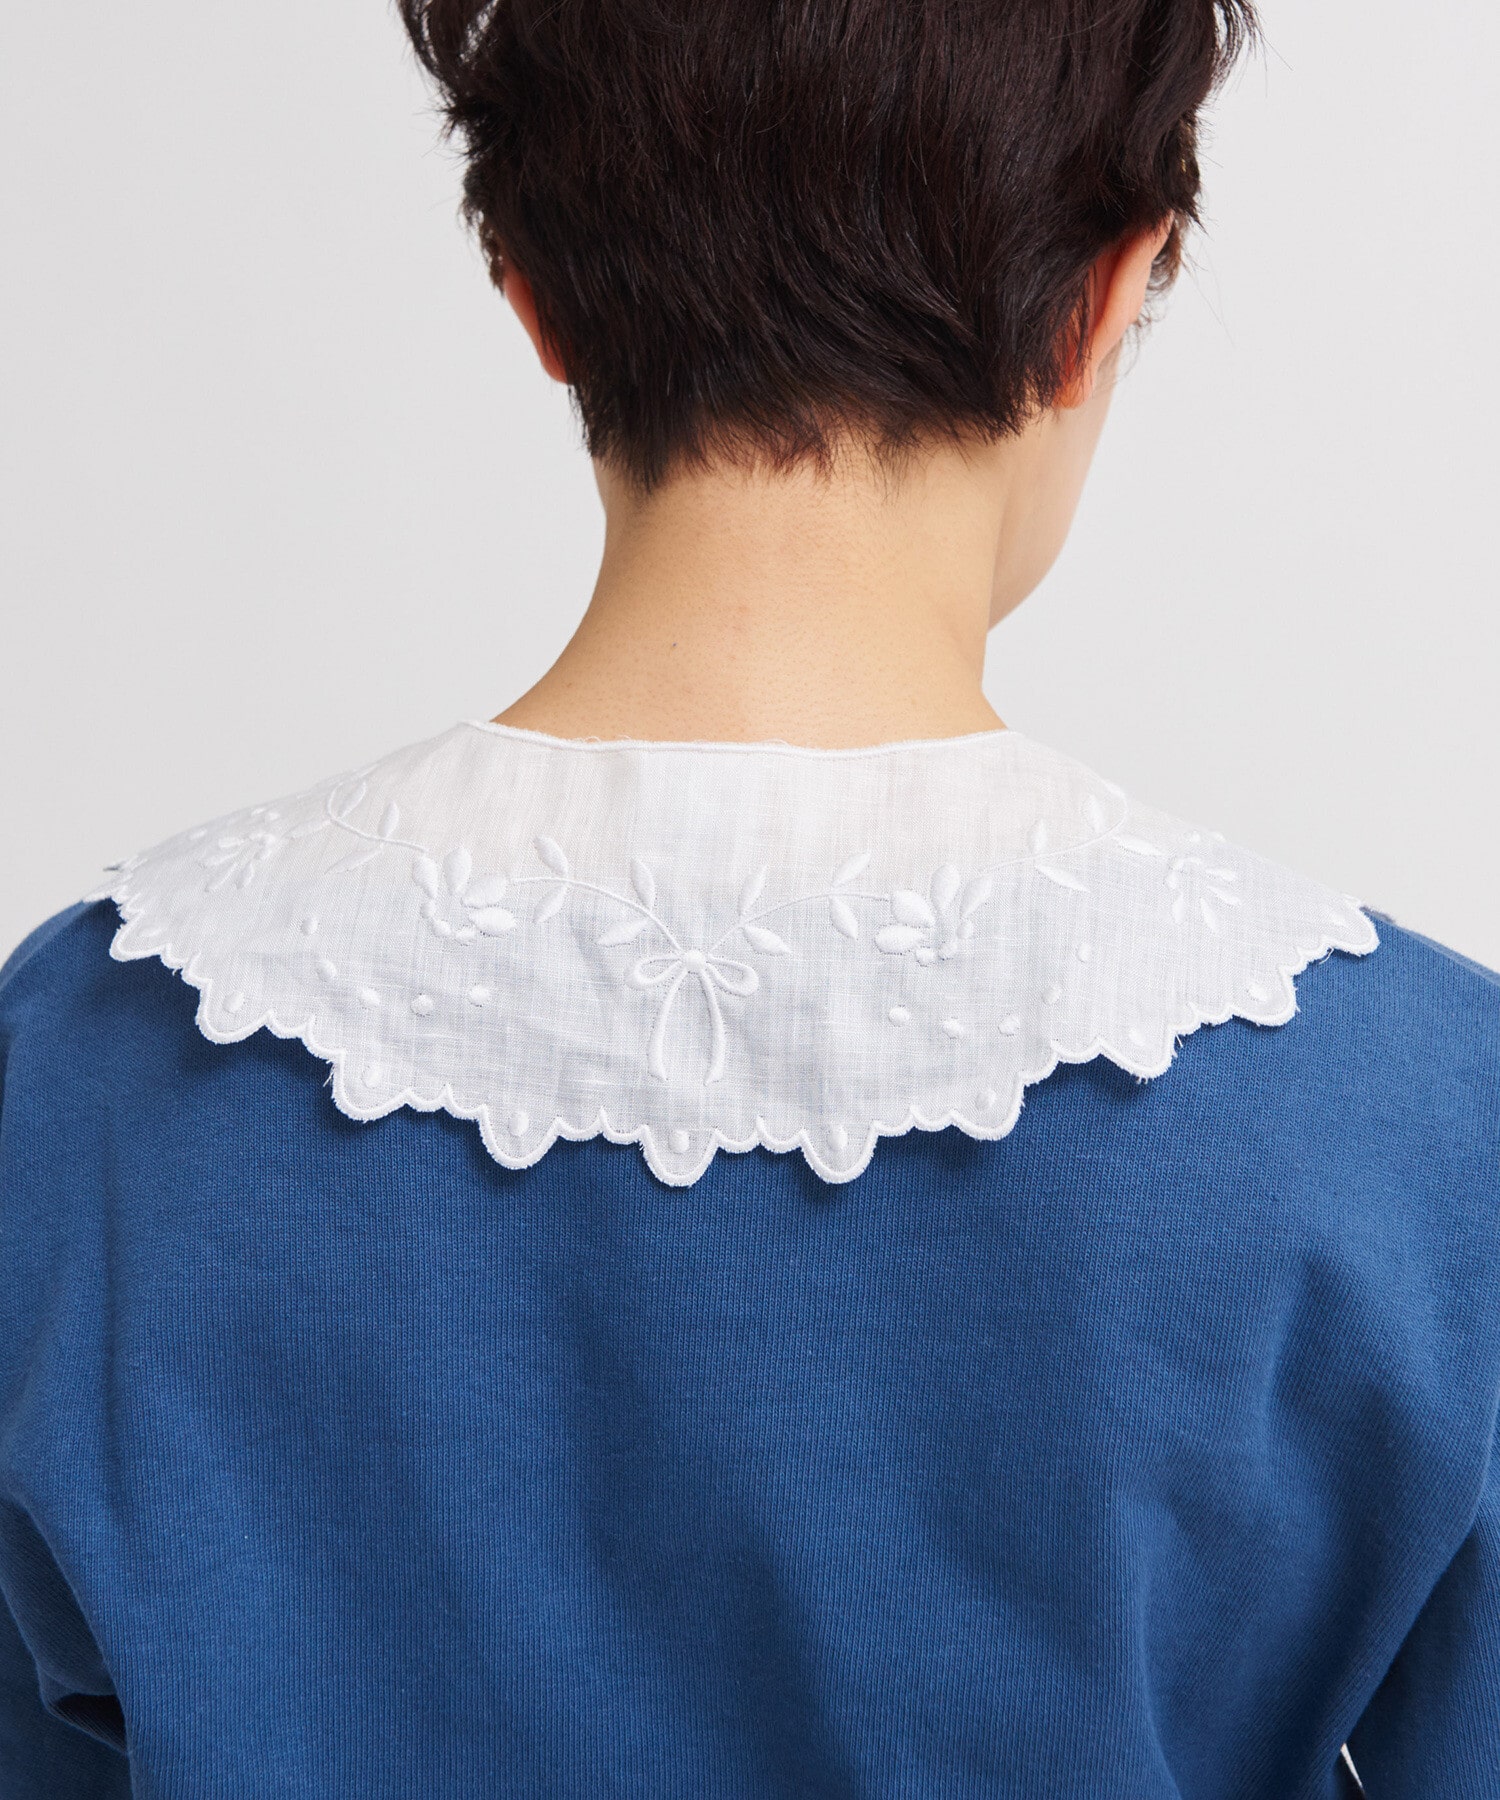 AMBIDEX Store 〇フレンチリネン カットワーク刺繍つけ衿(F クロ): Dot